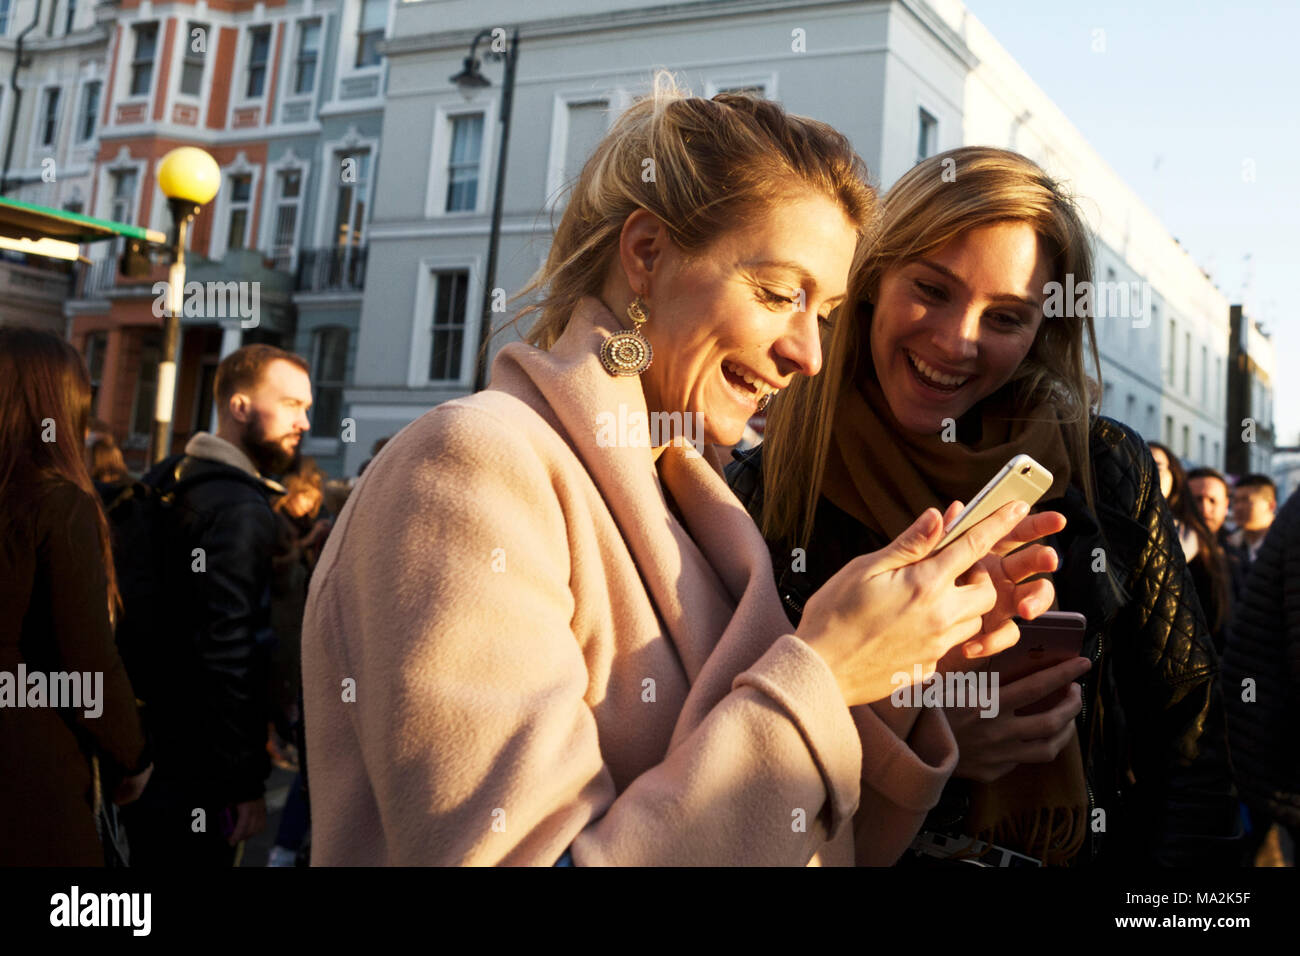 Junge Erwachsene, die mit Emotionen lächeln und auf das Smartphone schauen. Kommunikation. Millennials, die Emotionen ausdrücken. Leute Happy Street. Stockfoto